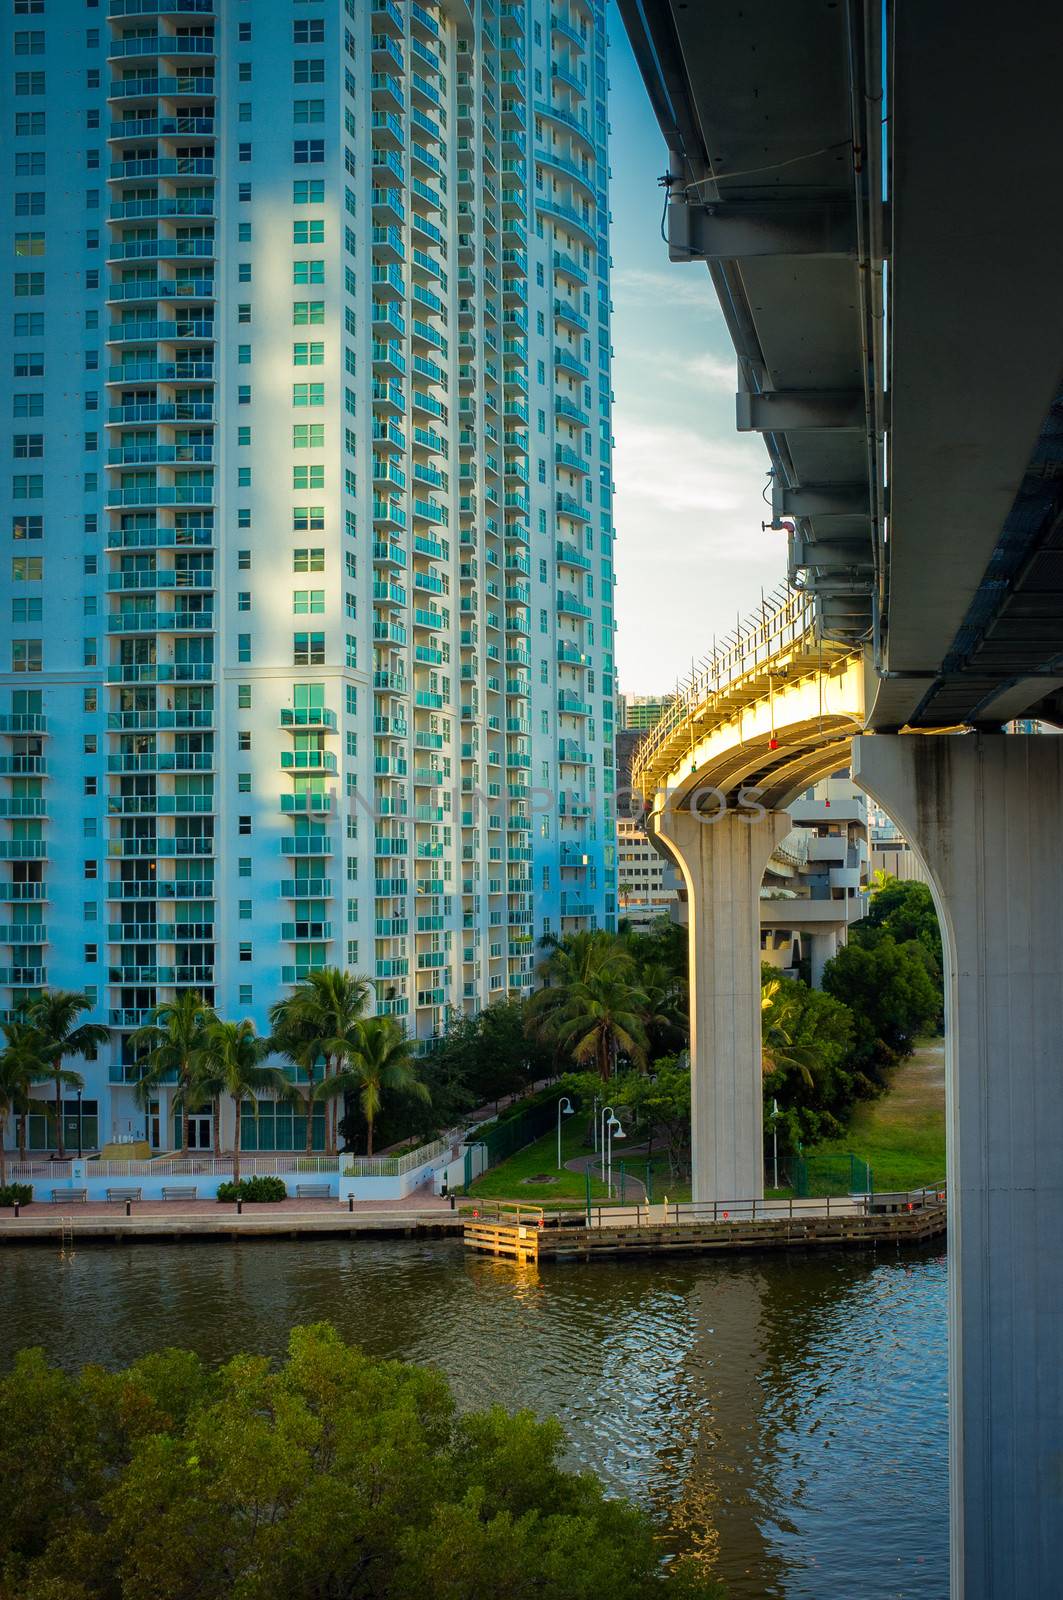 Downtown Miami by CelsoDiniz